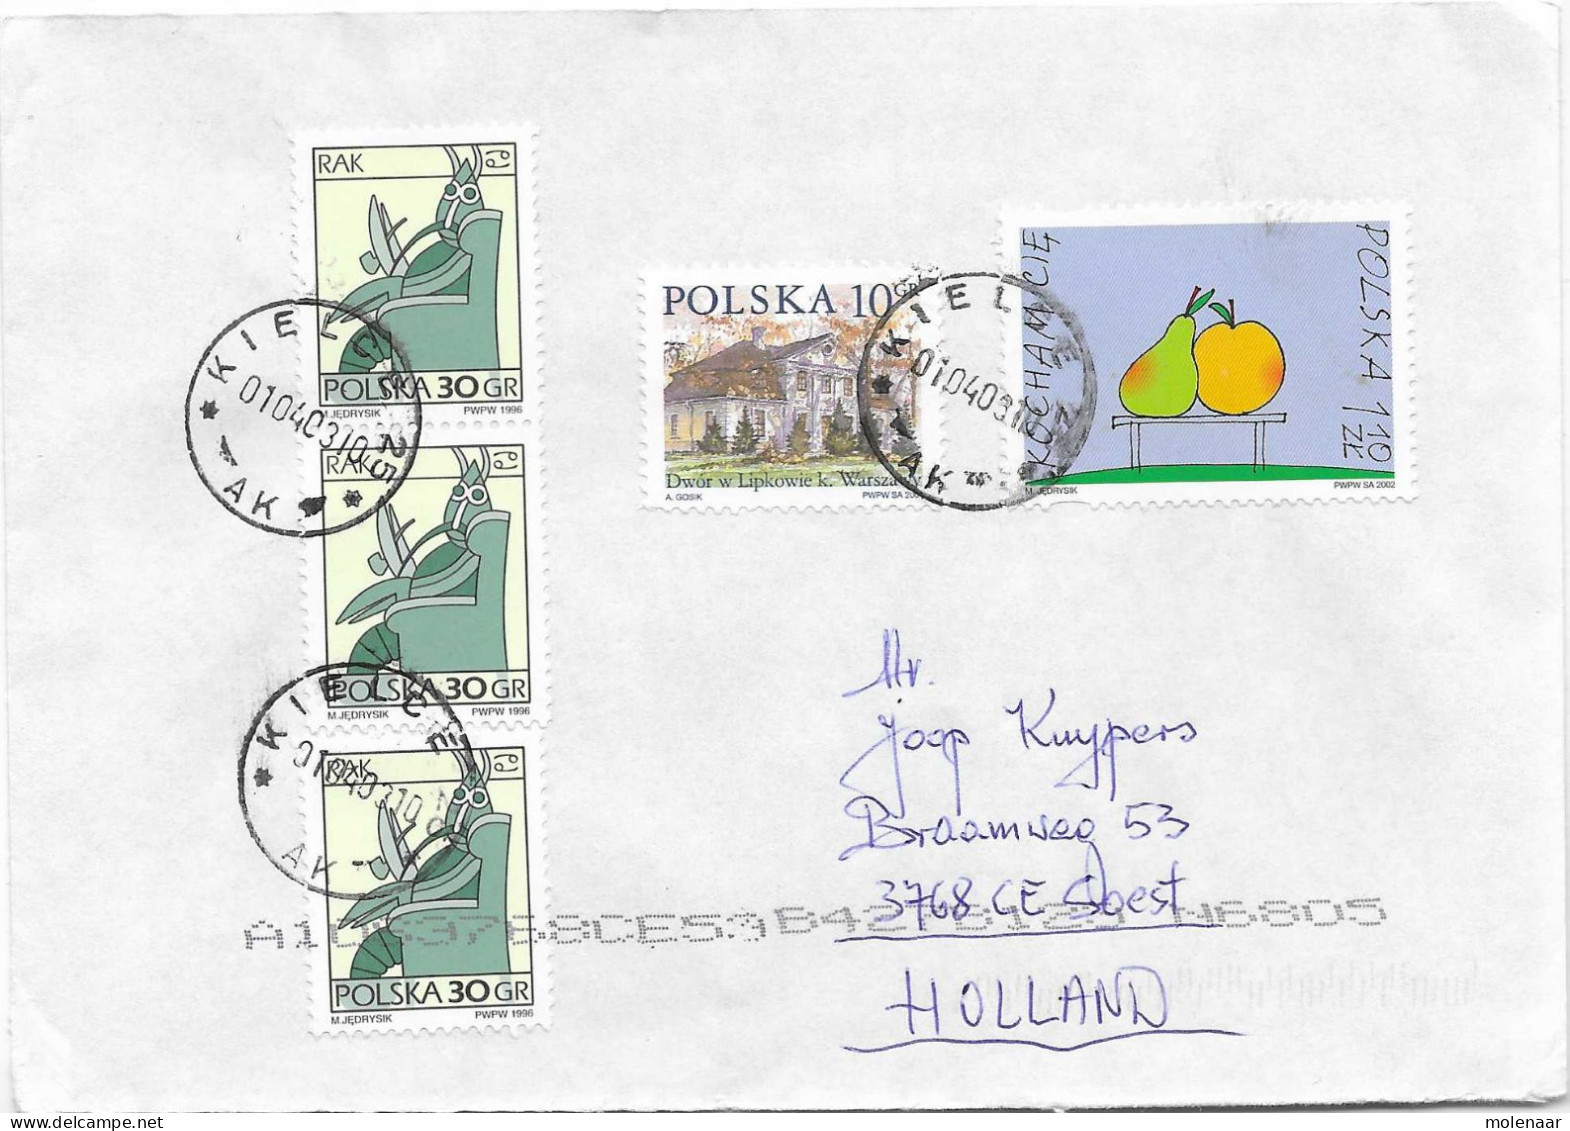 Postzegels > Europa > Polen > 1944-.... Republiek > 2001-10 > Brief Uit 2002 Met 5 Postzegels (17131) - Storia Postale